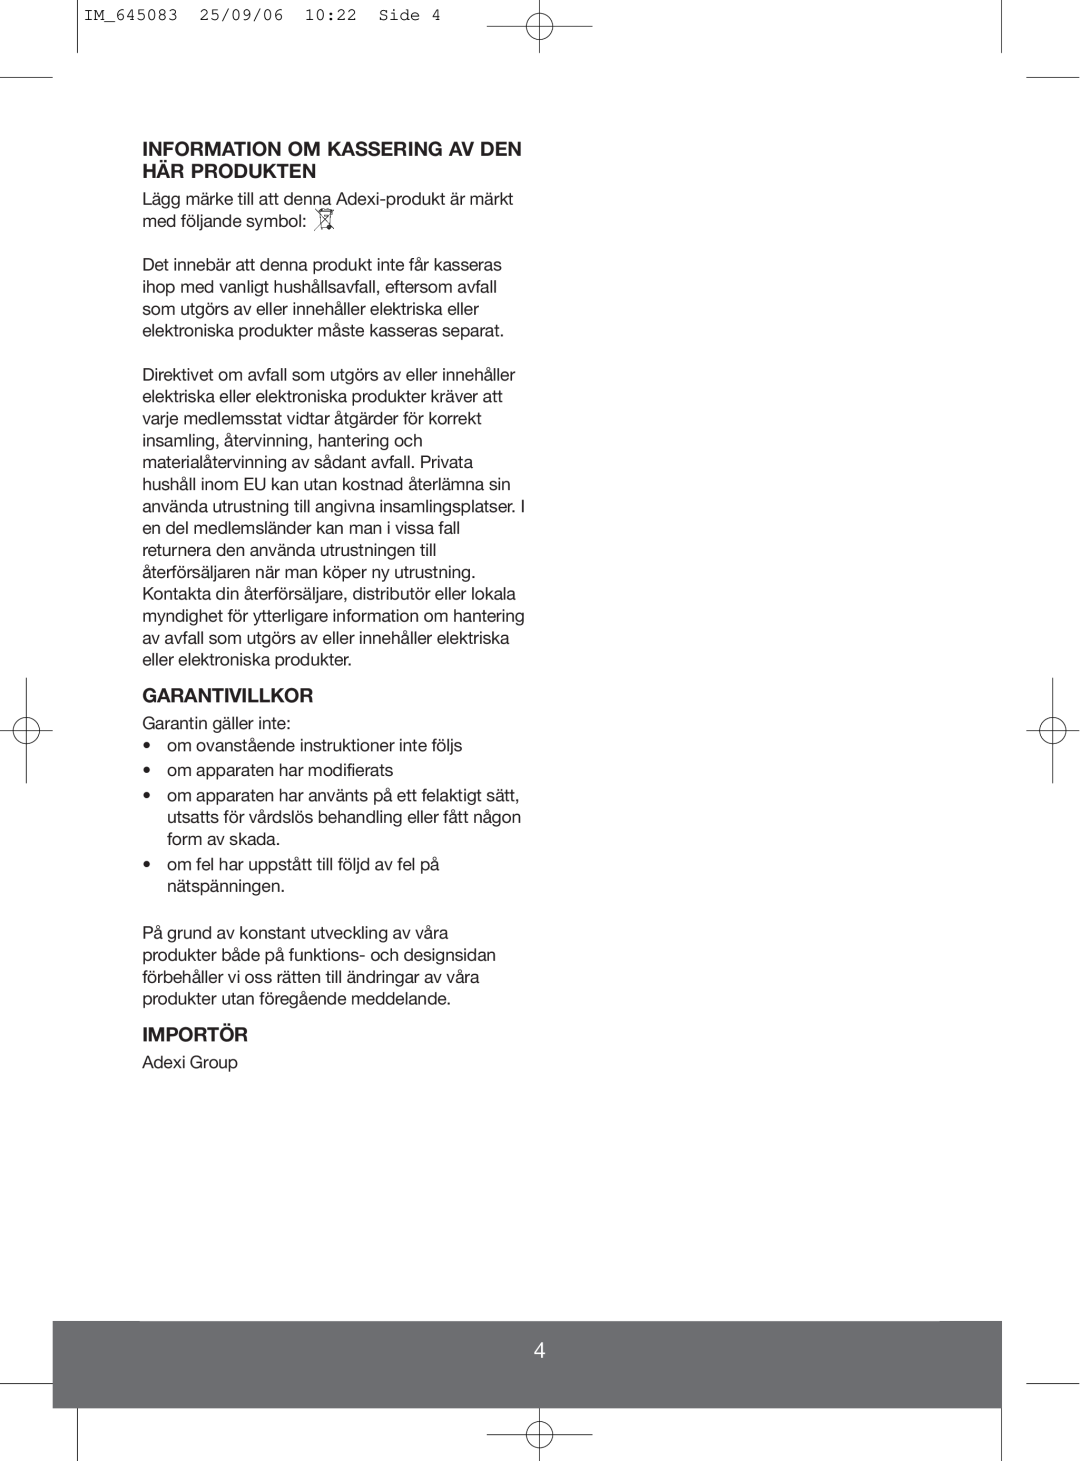 Melissa 645-243, 645-237, 145-016 manual Information Om Kassering Av Den Här Produkten, Garantivillkor, Importör 